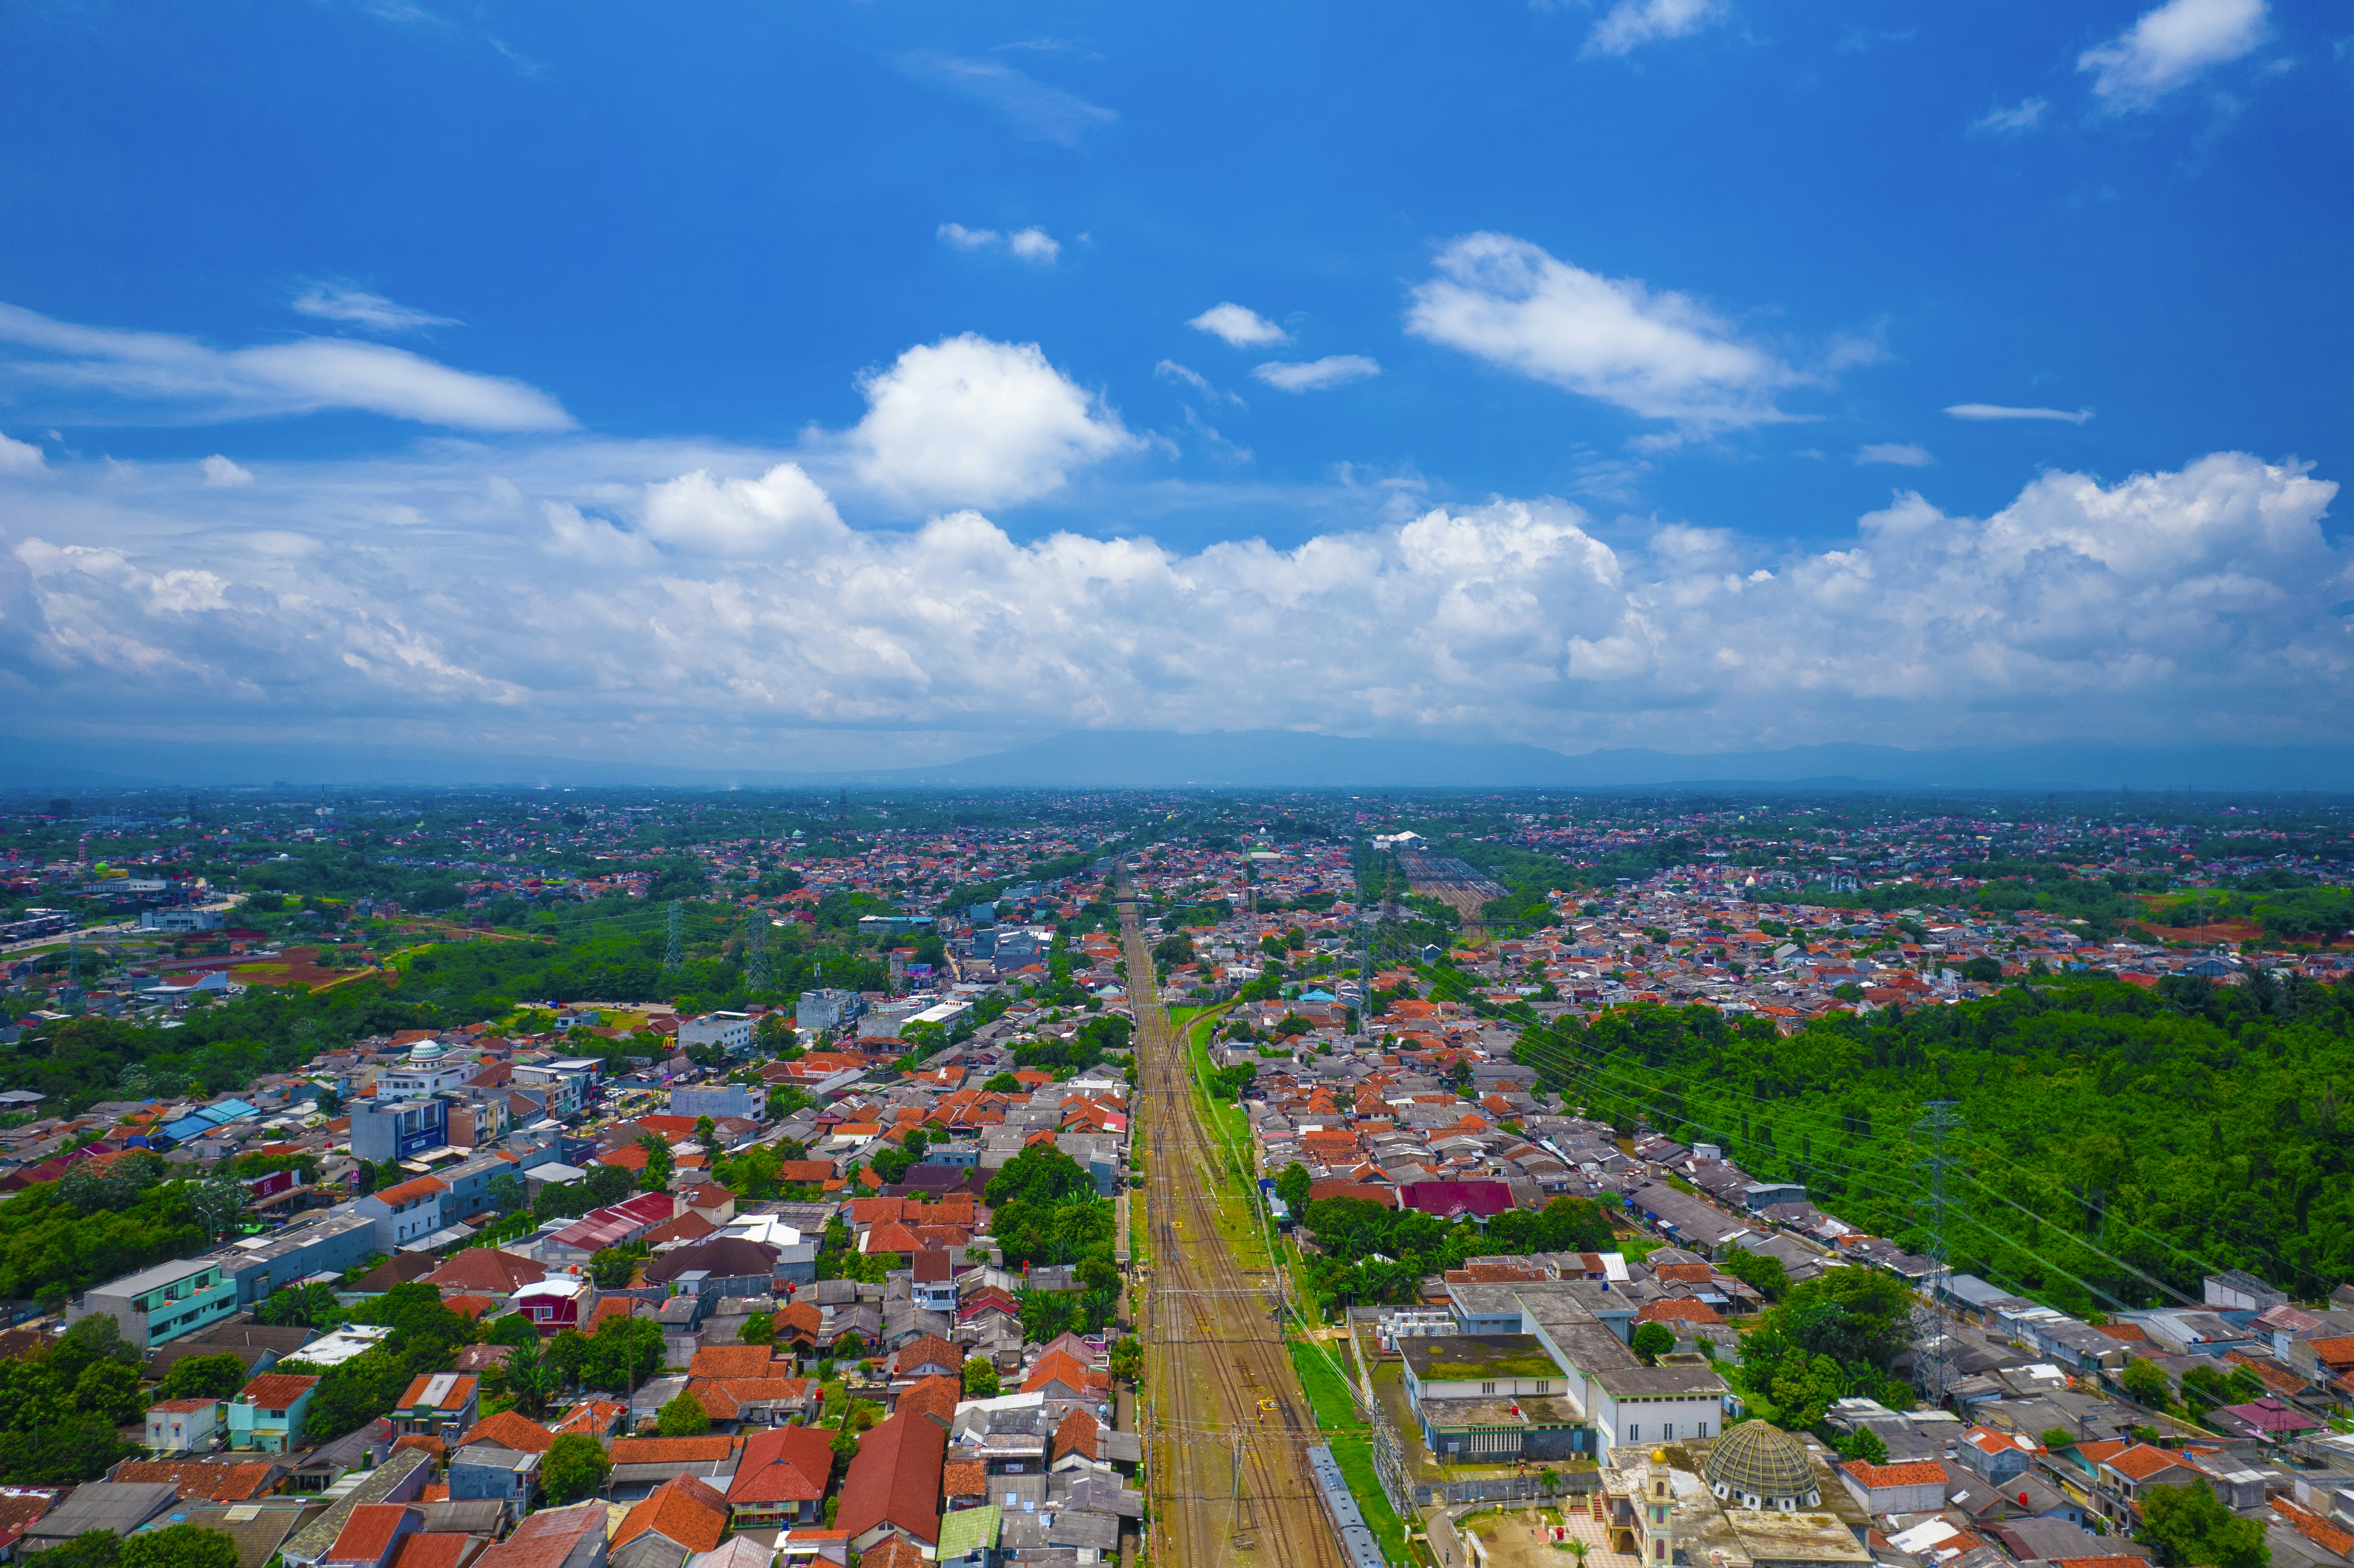 Aerial Views Around Depok City Station, West Java